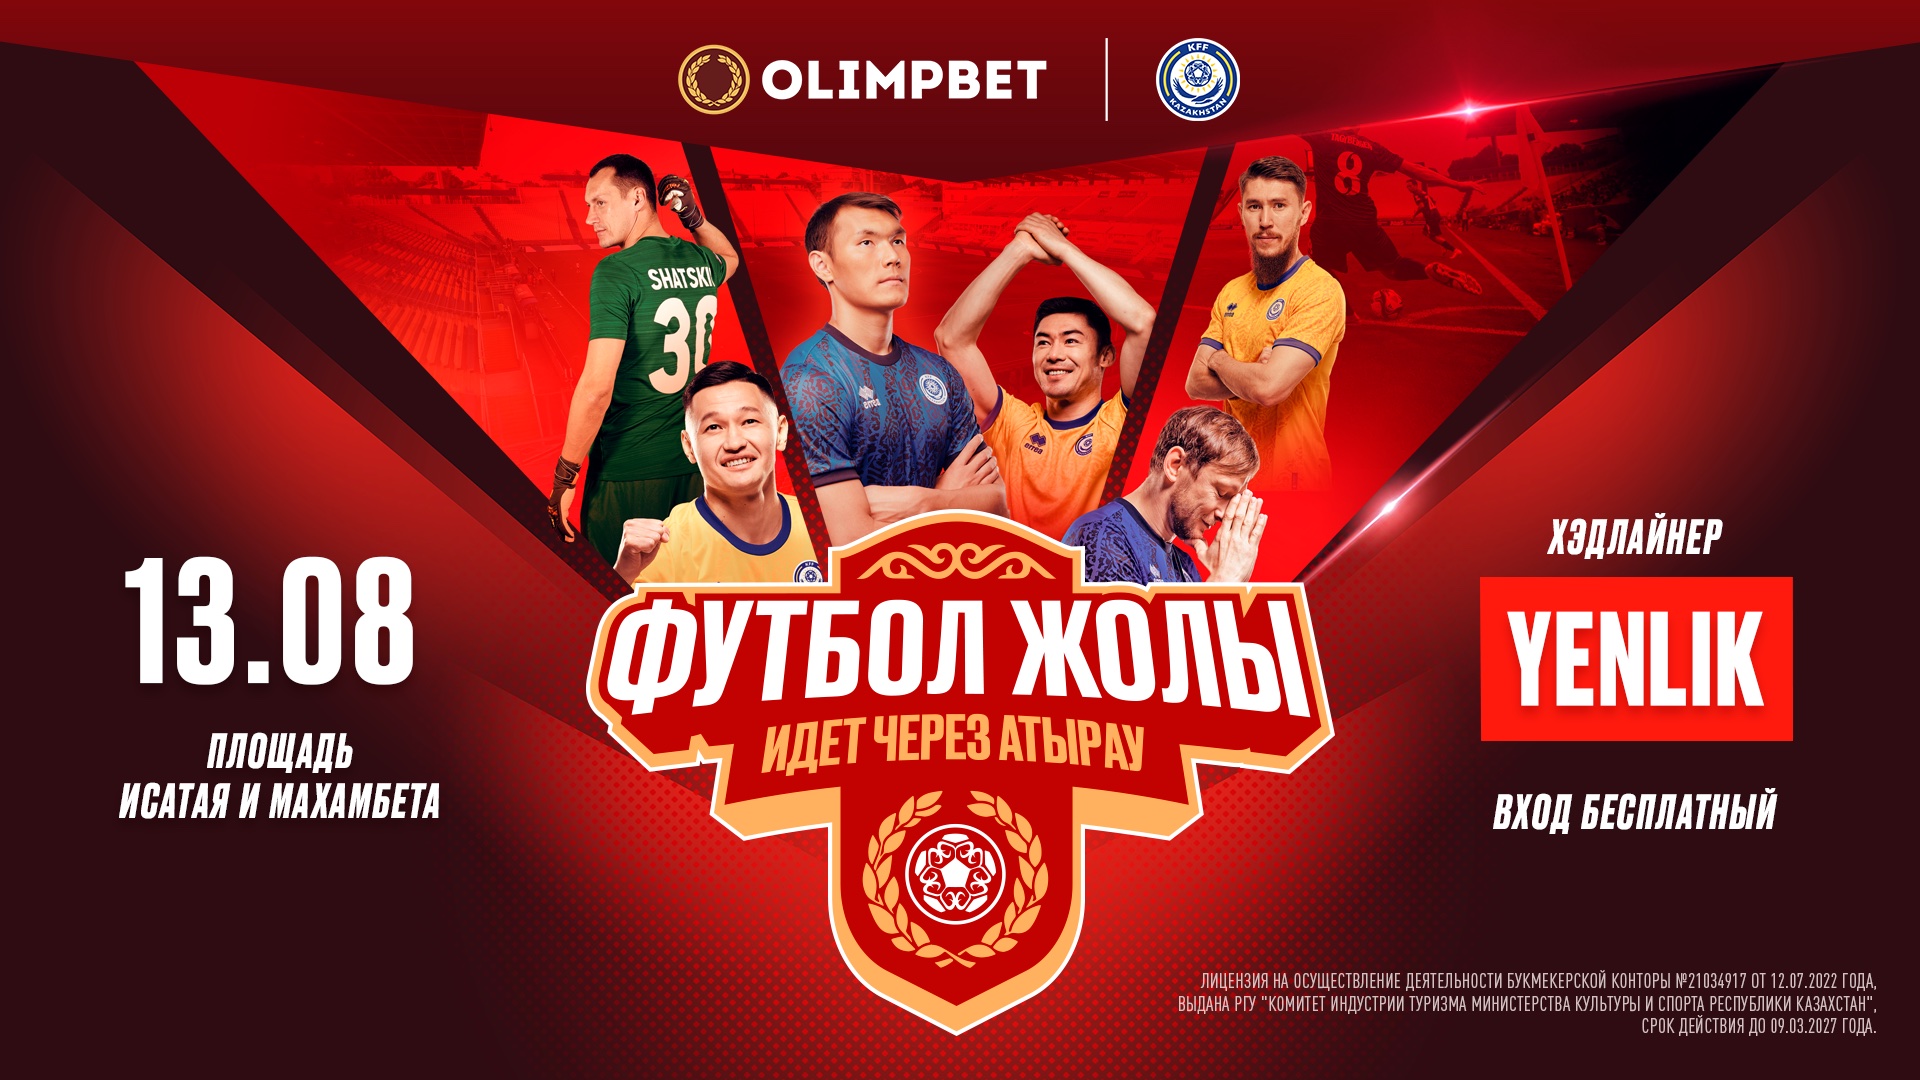 Спорт, музыка, призы: БК Olimpbet анонсировала проведение фестиваля «Футбол жолы» в Атырау